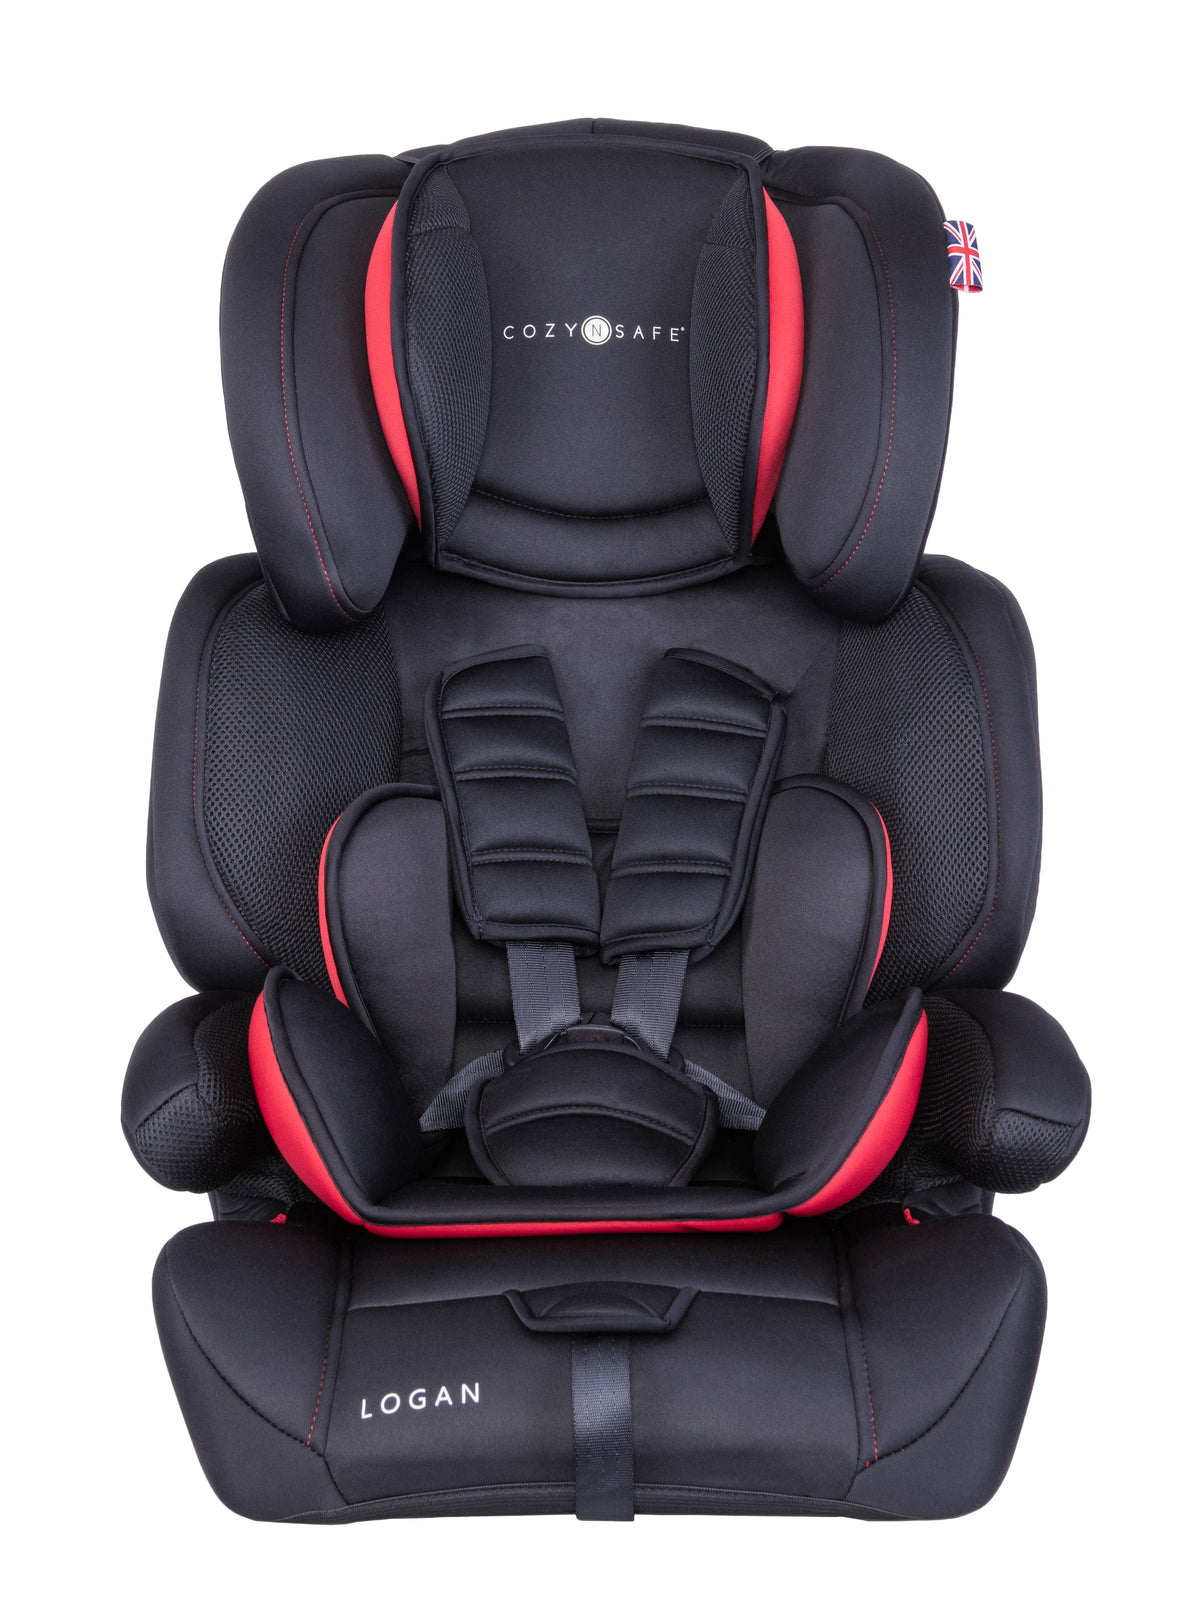 Logan Group 1/2/3 Child Car Seat - Black/Red